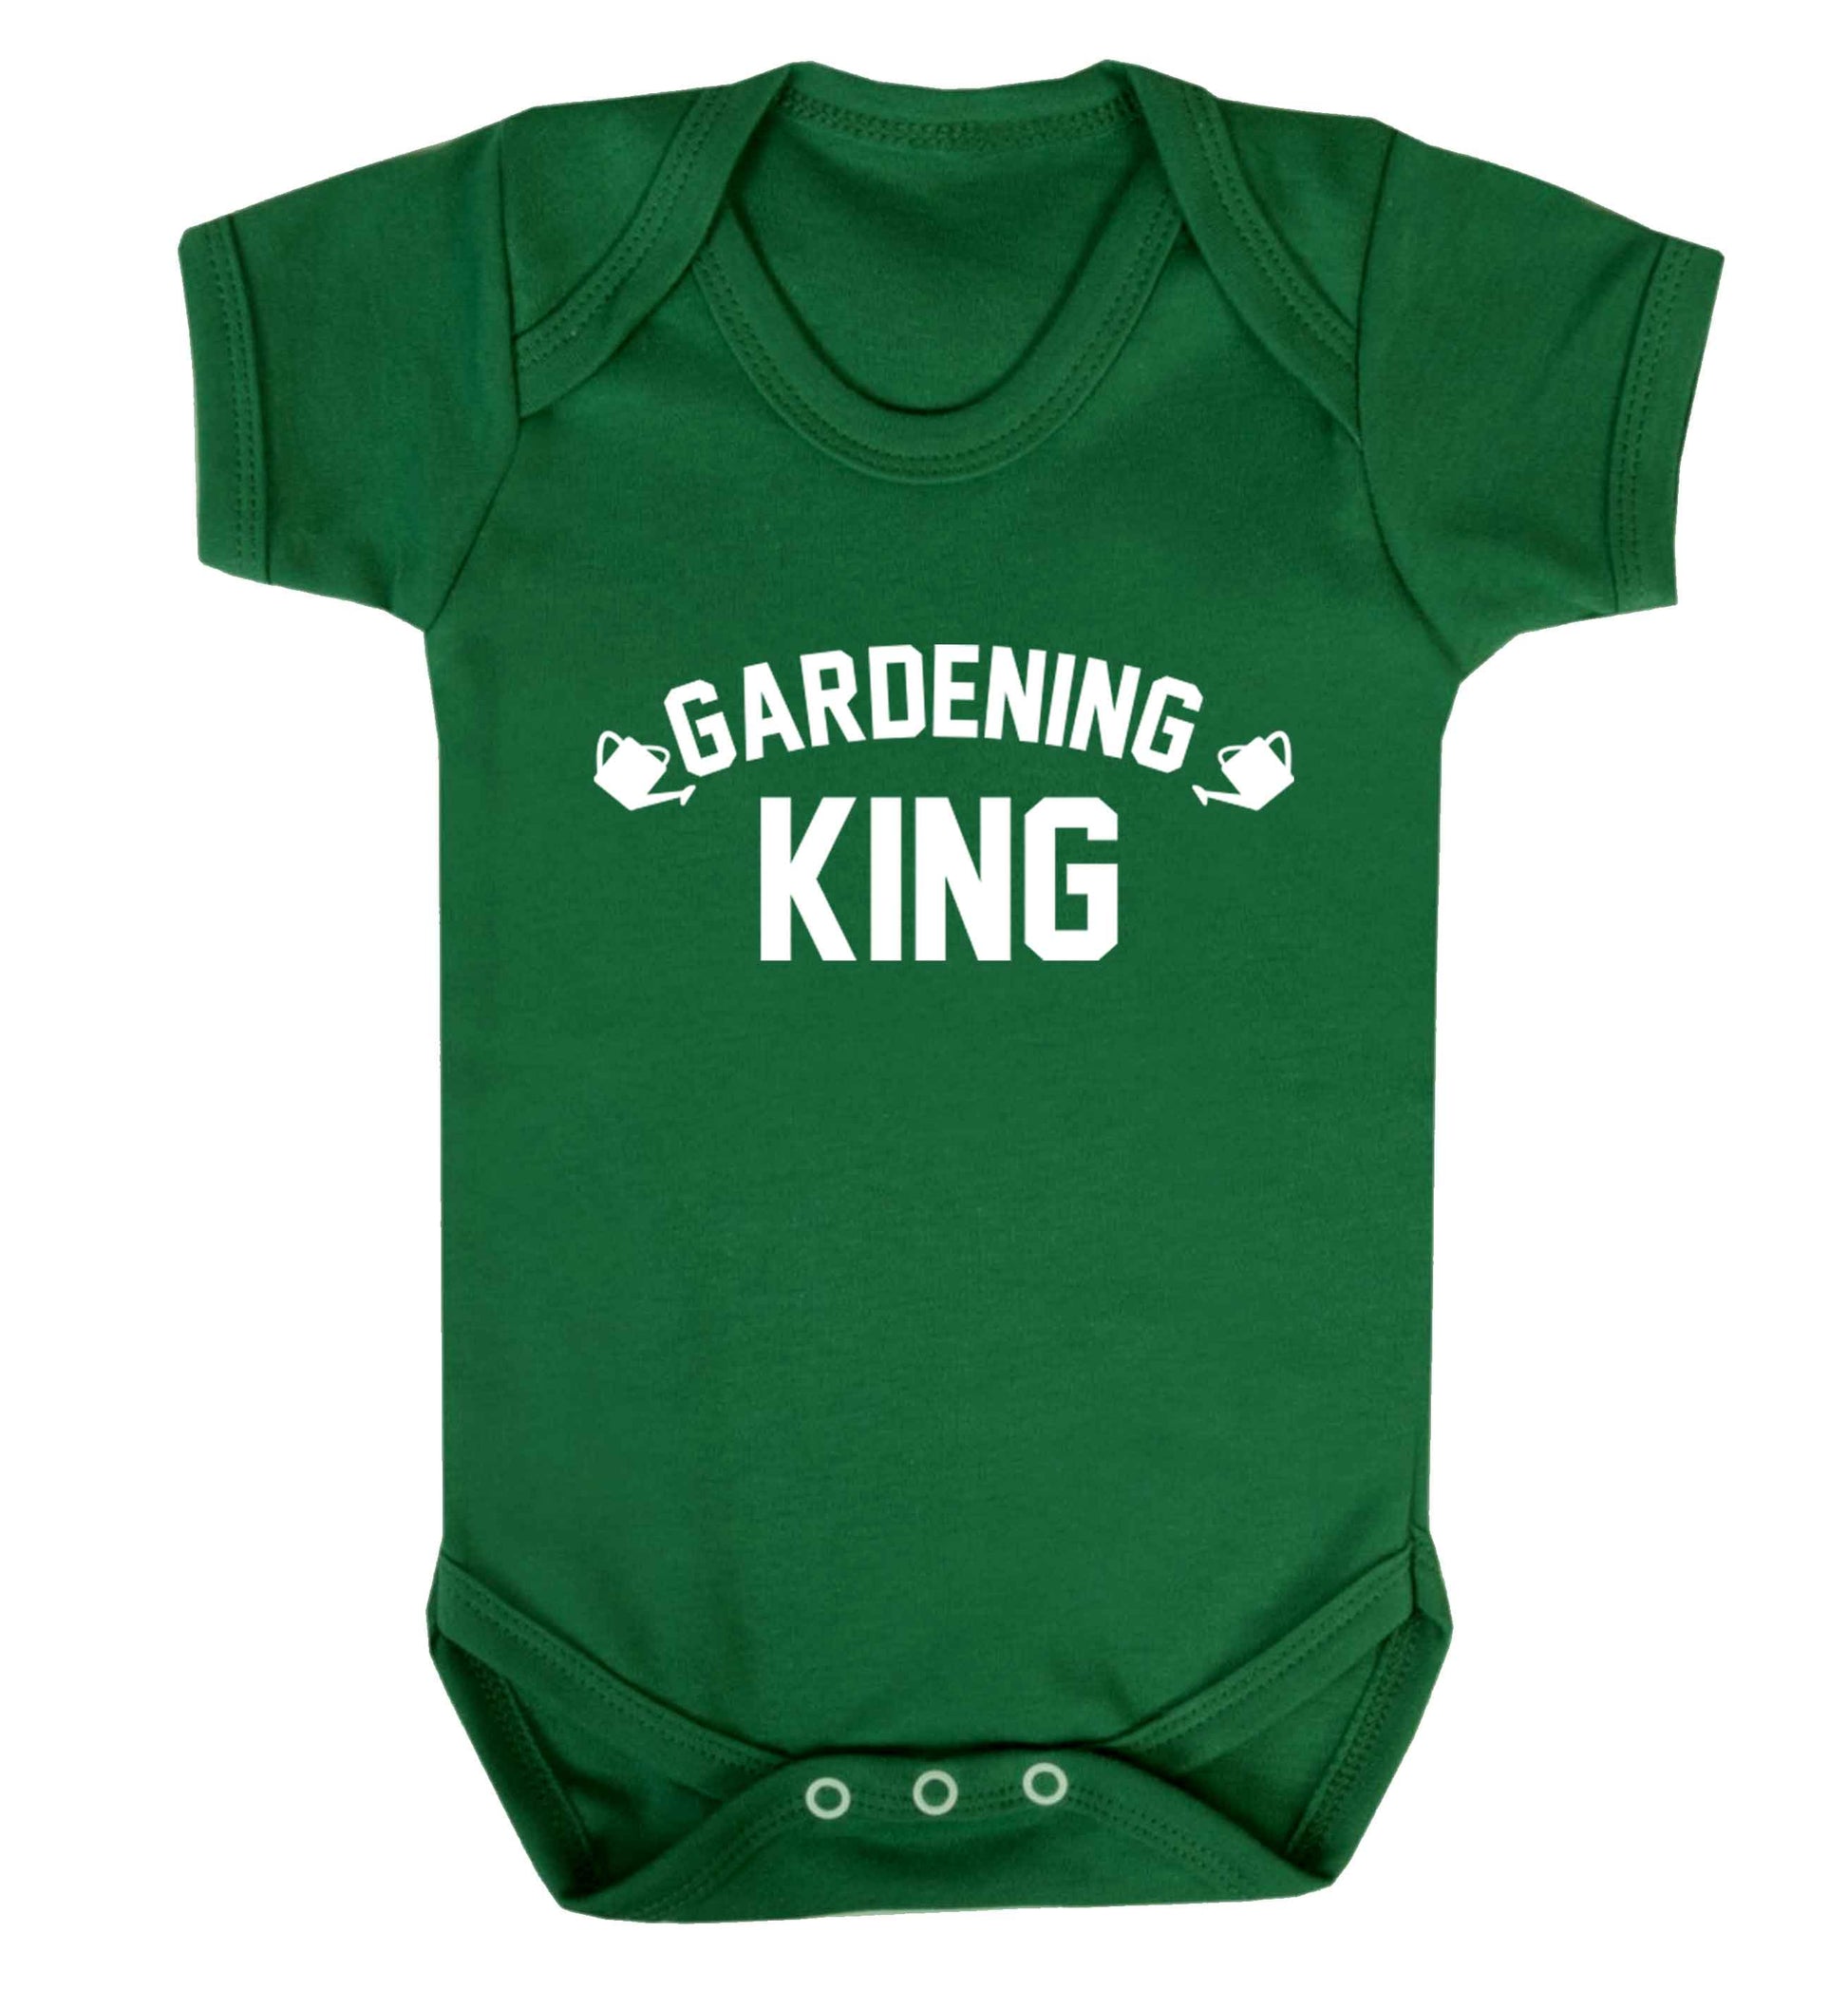 Gardening king Baby Vest green 18-24 months